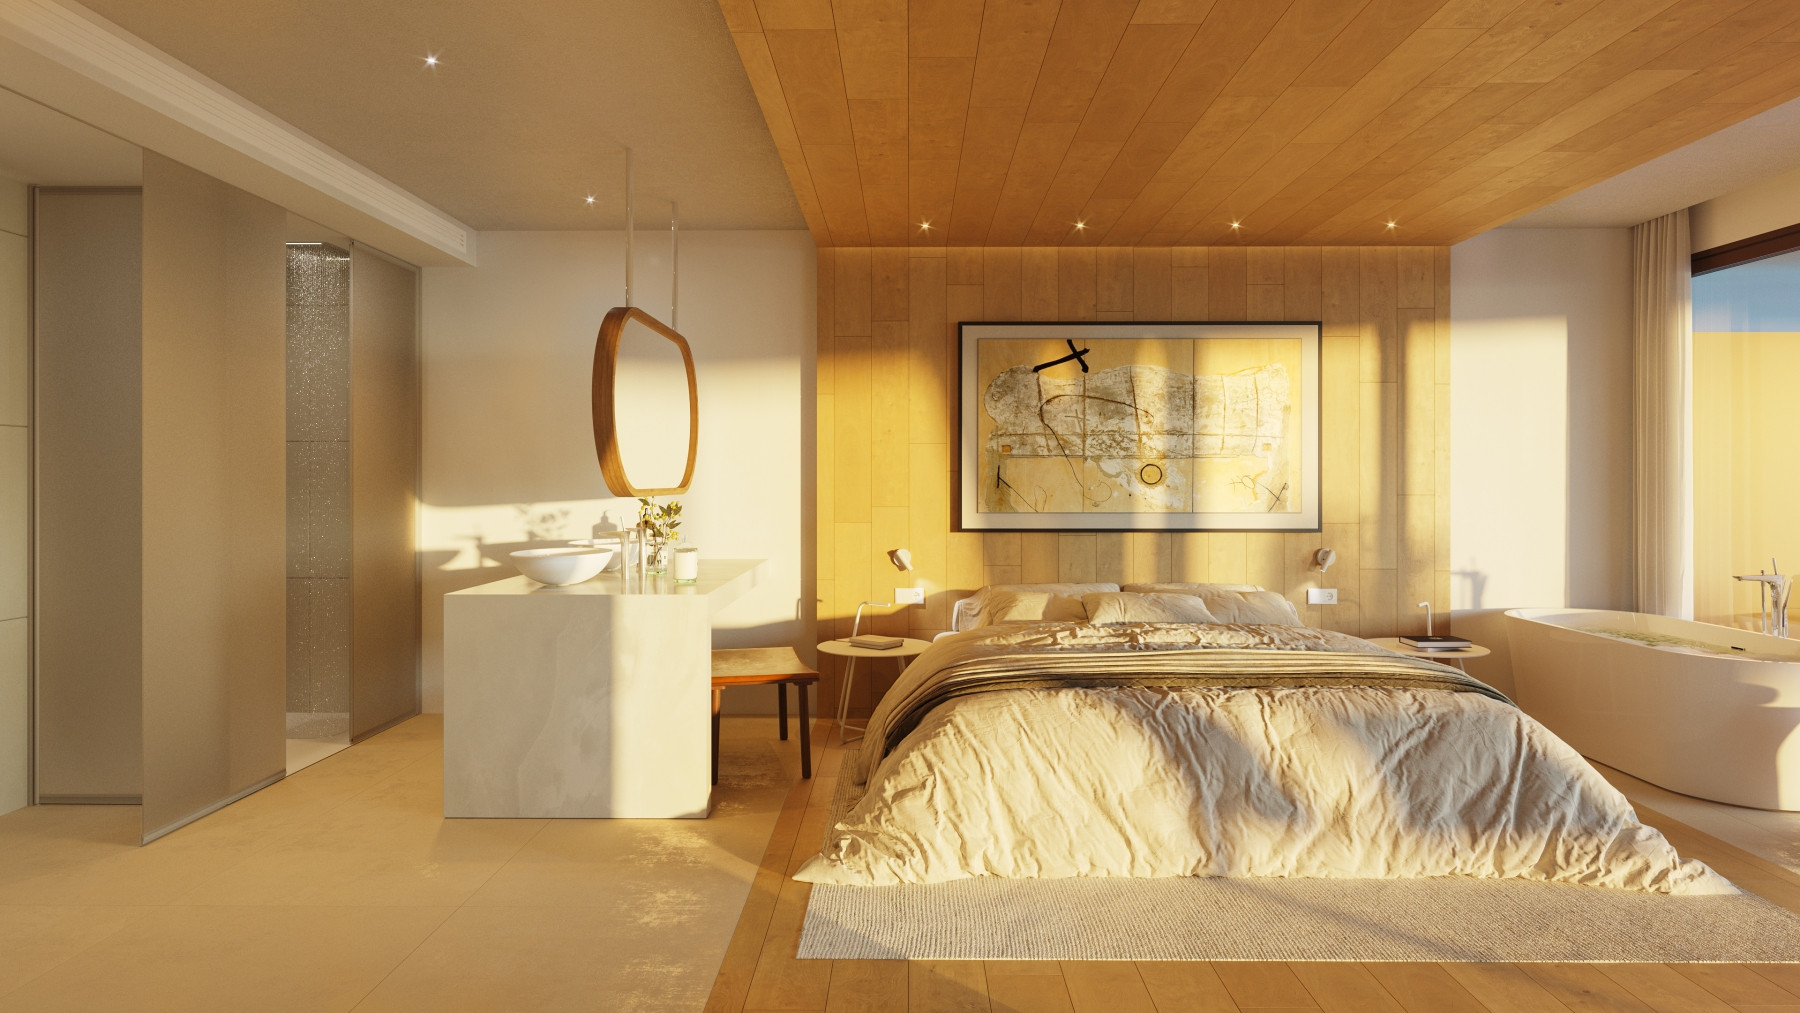 Luxury three bedroom villa with sea views in El Higueron, Fuengirola. | Image 4